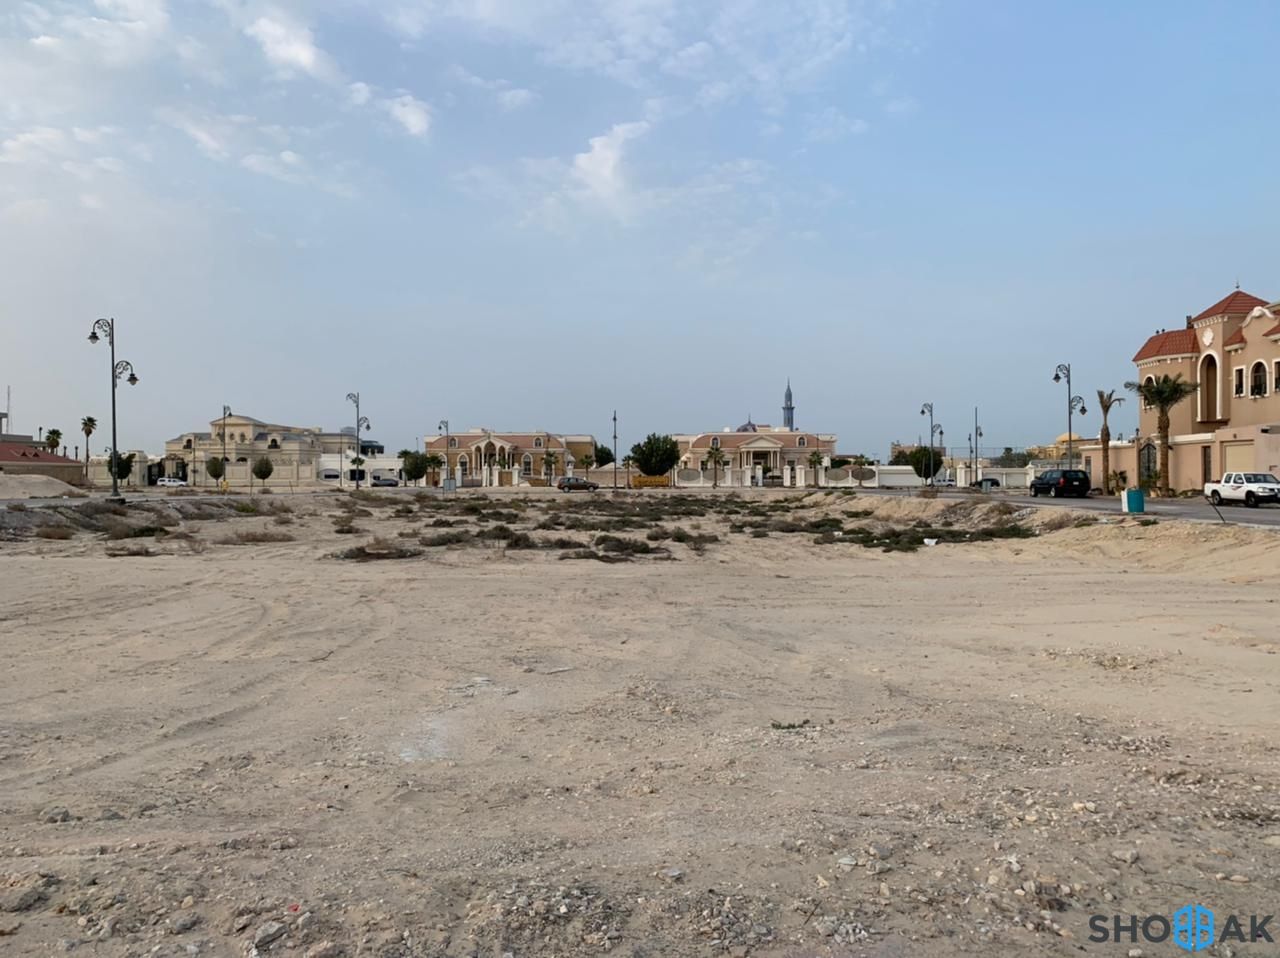 ارض للبيع - شارع الأمير حمود - حي الحزام الأخضر شباك السعودية